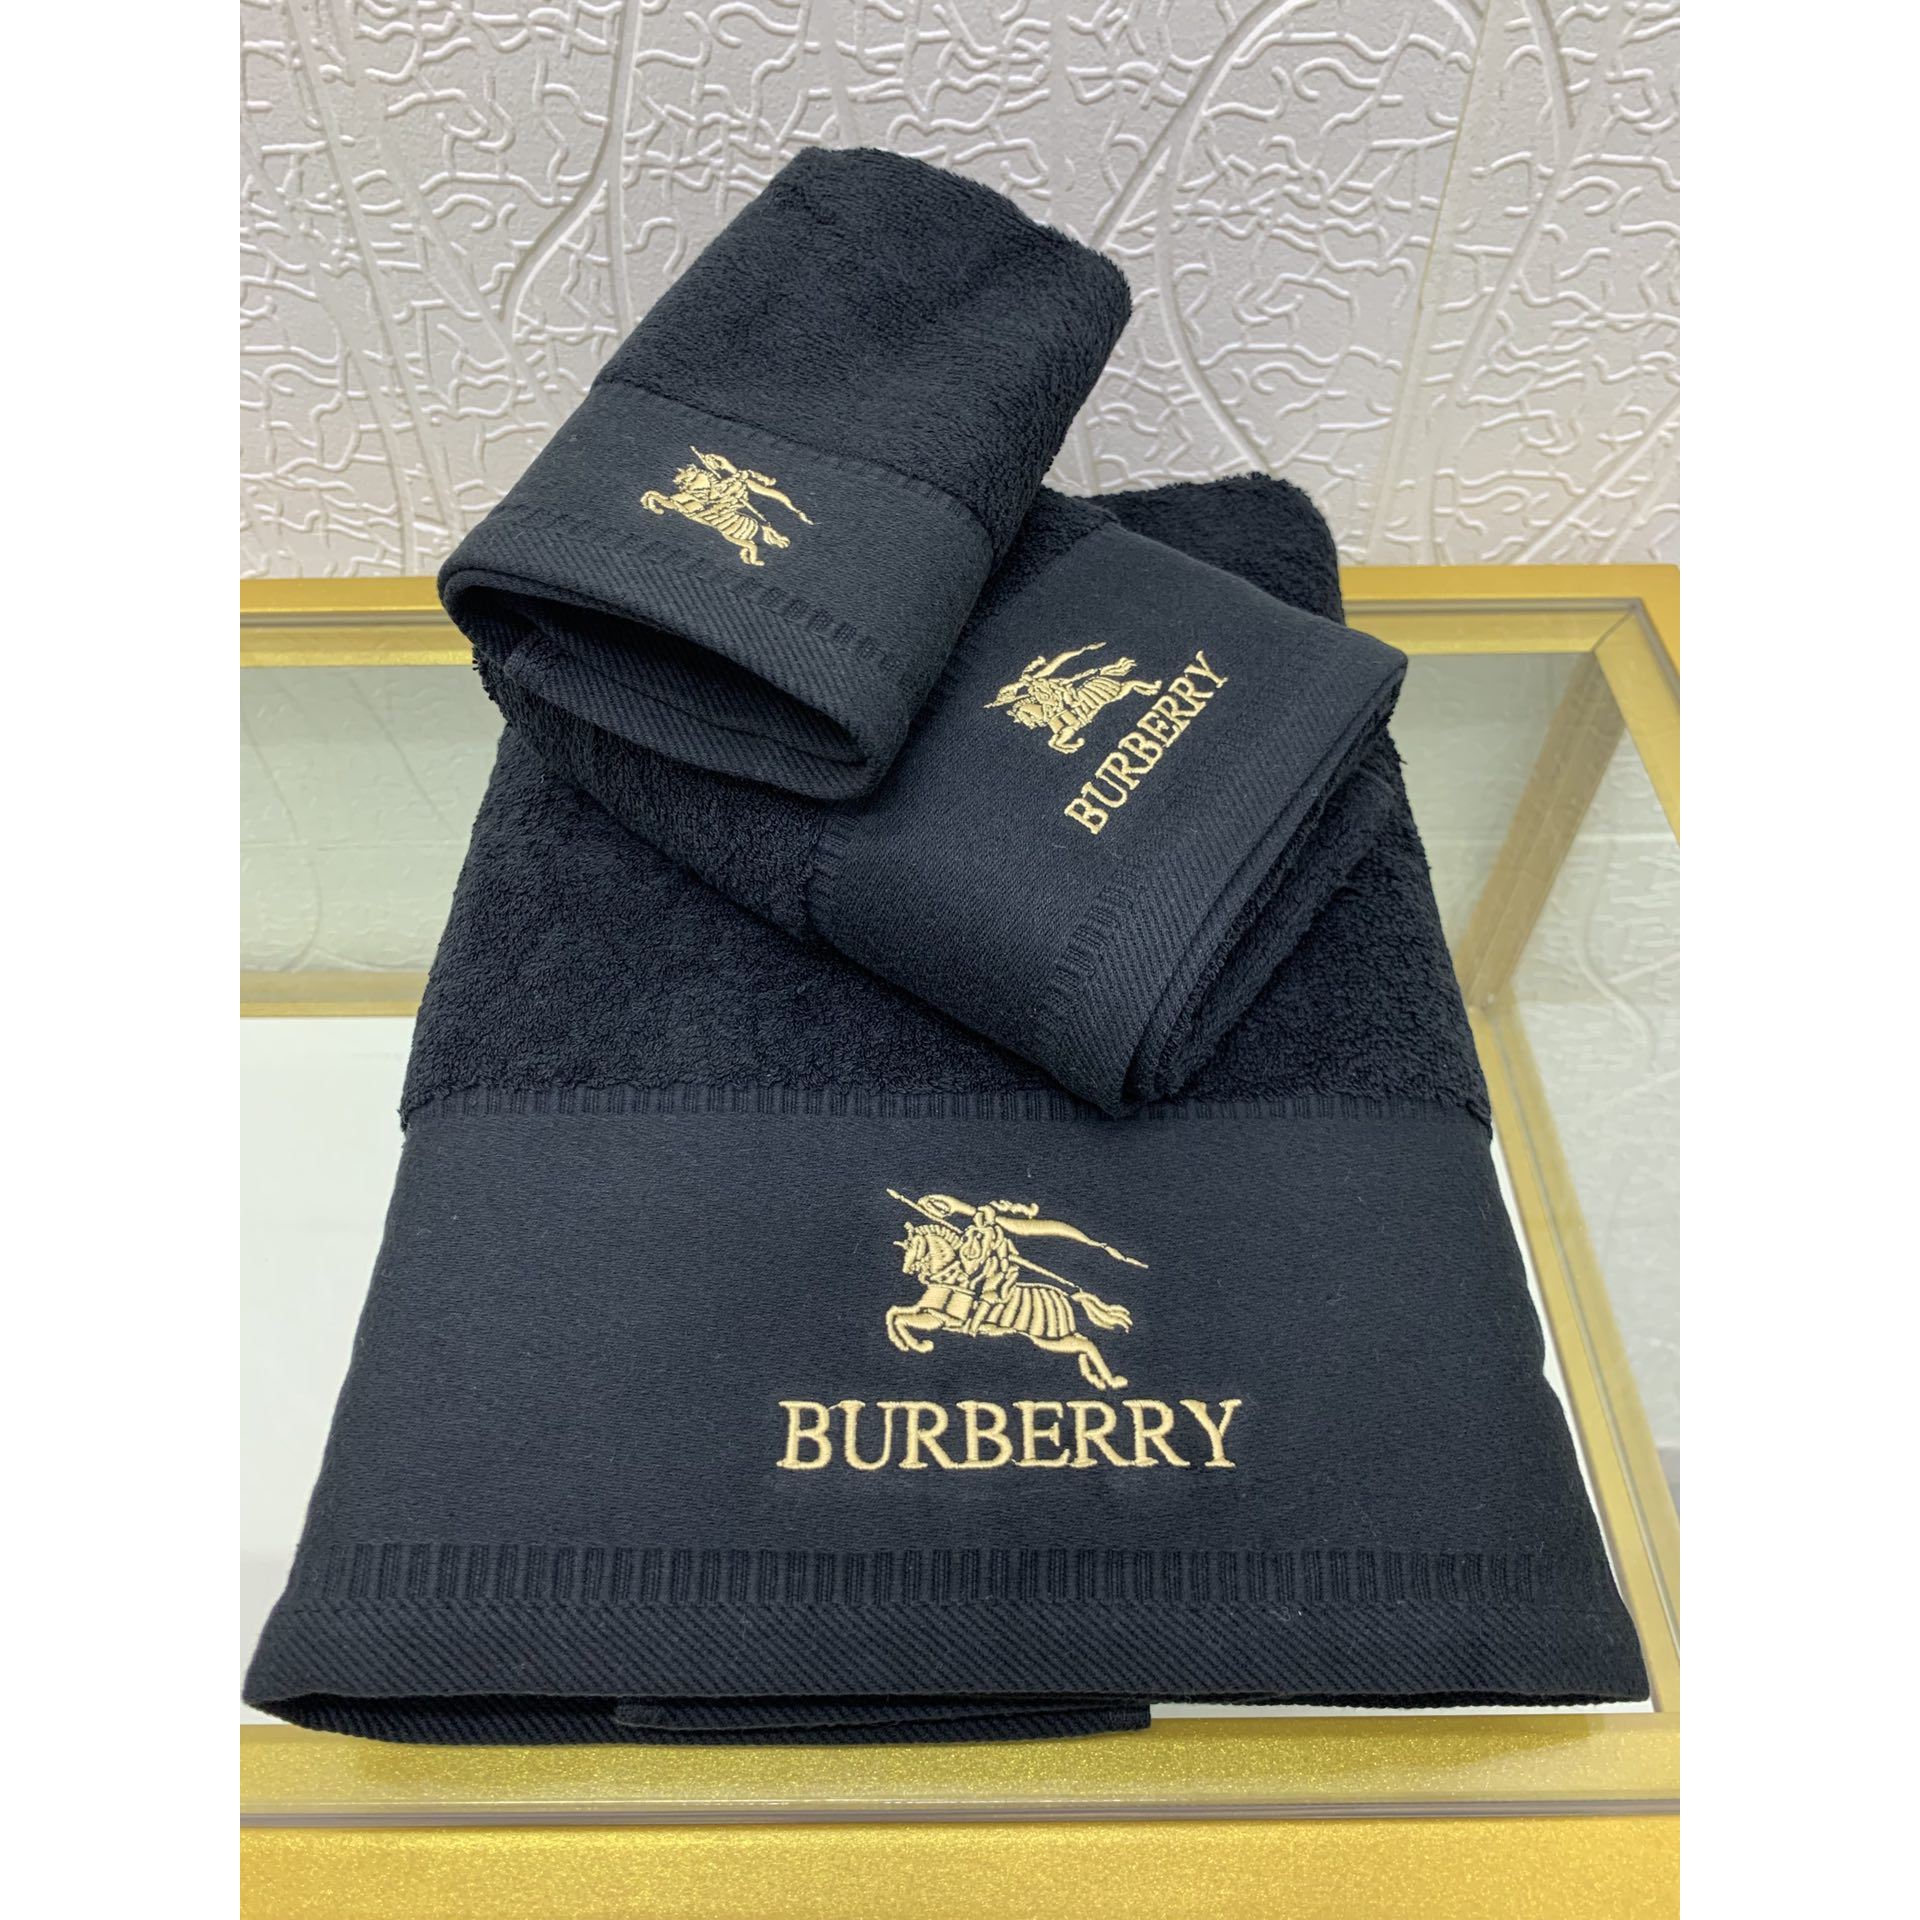 Burberry Bath Towel - Click Image to Close